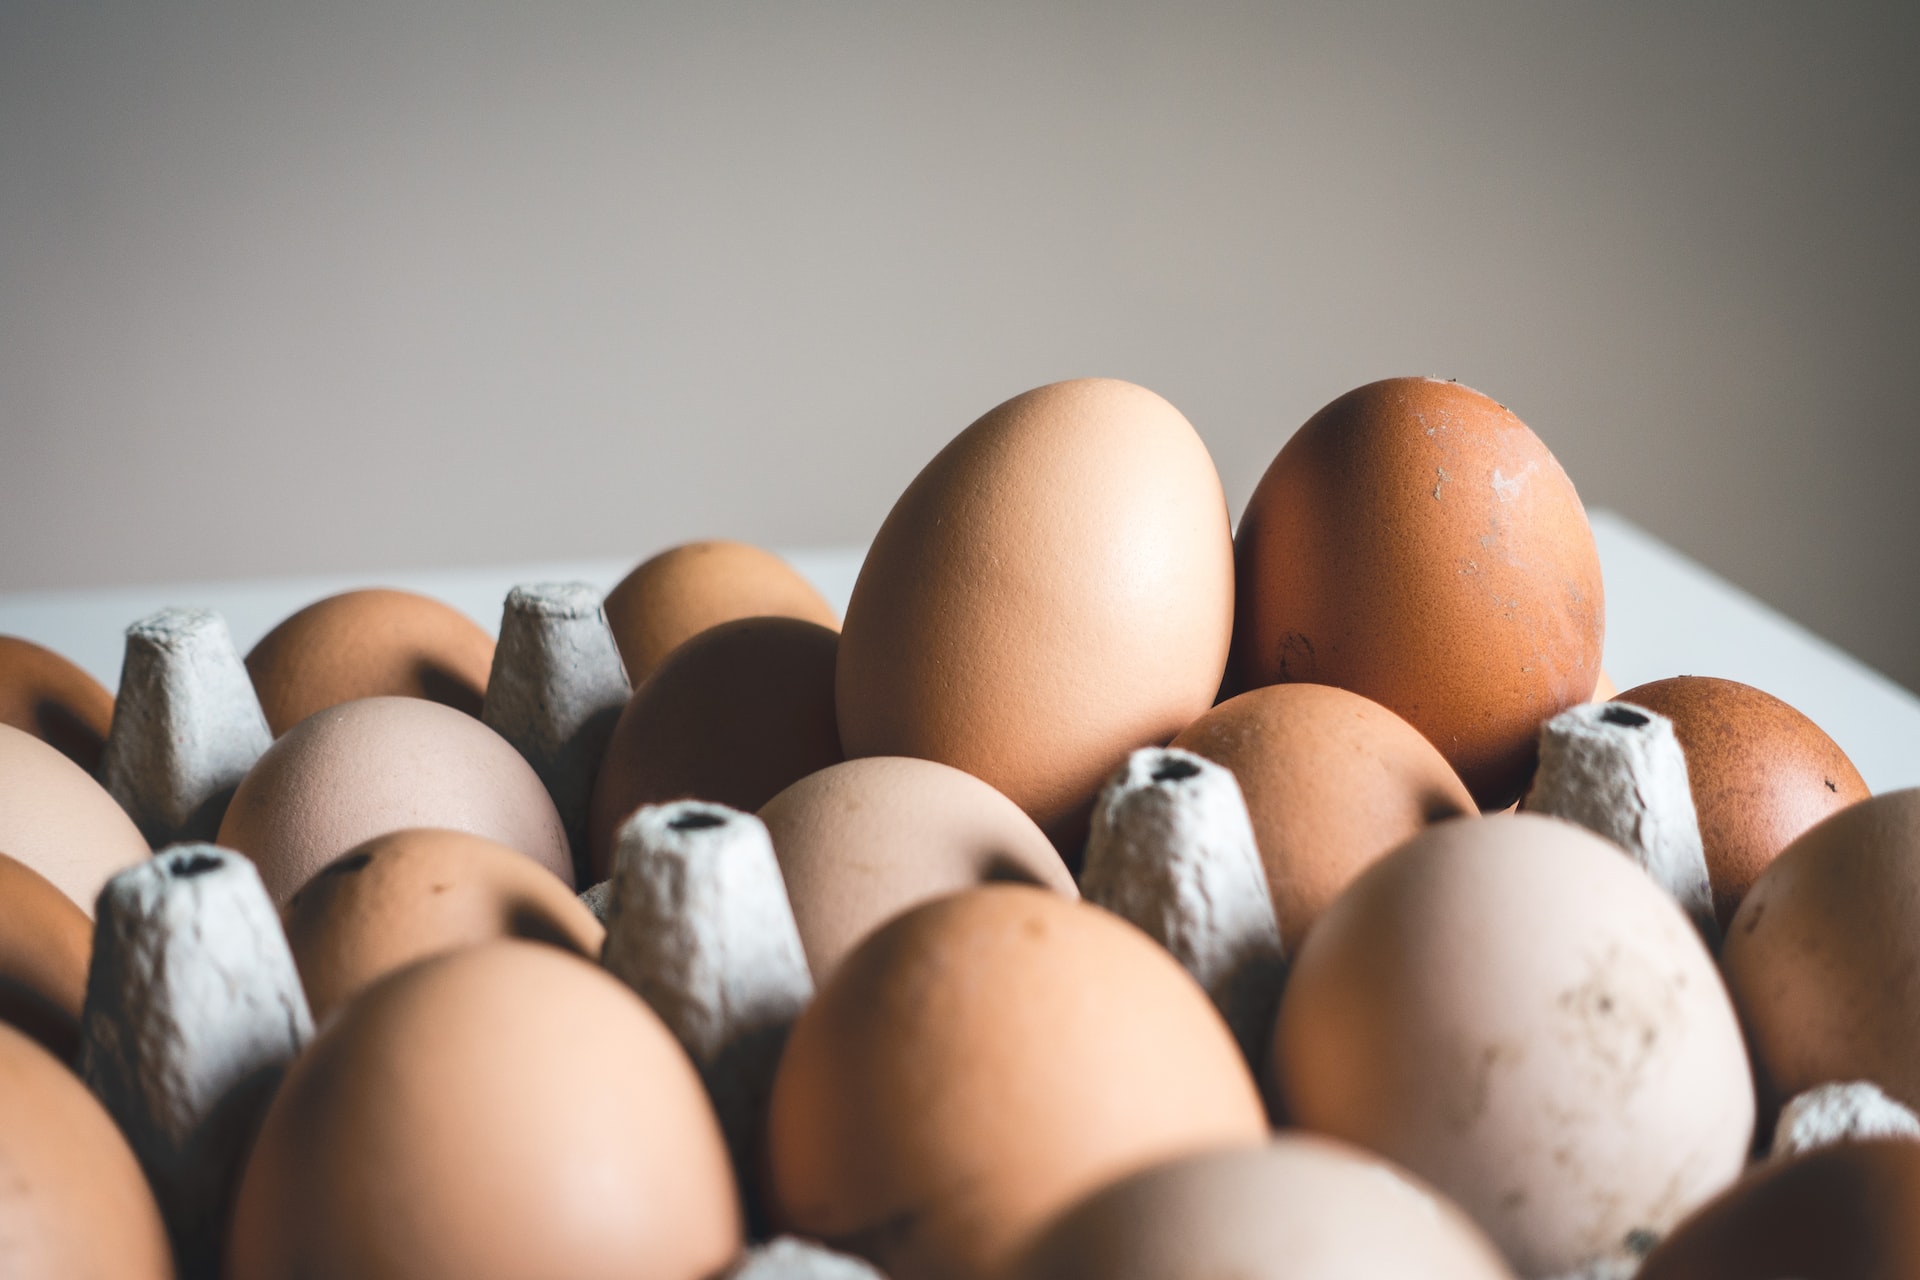 Como saber se o ovo está bom? Não coma antes de conhecer este TRUQUE